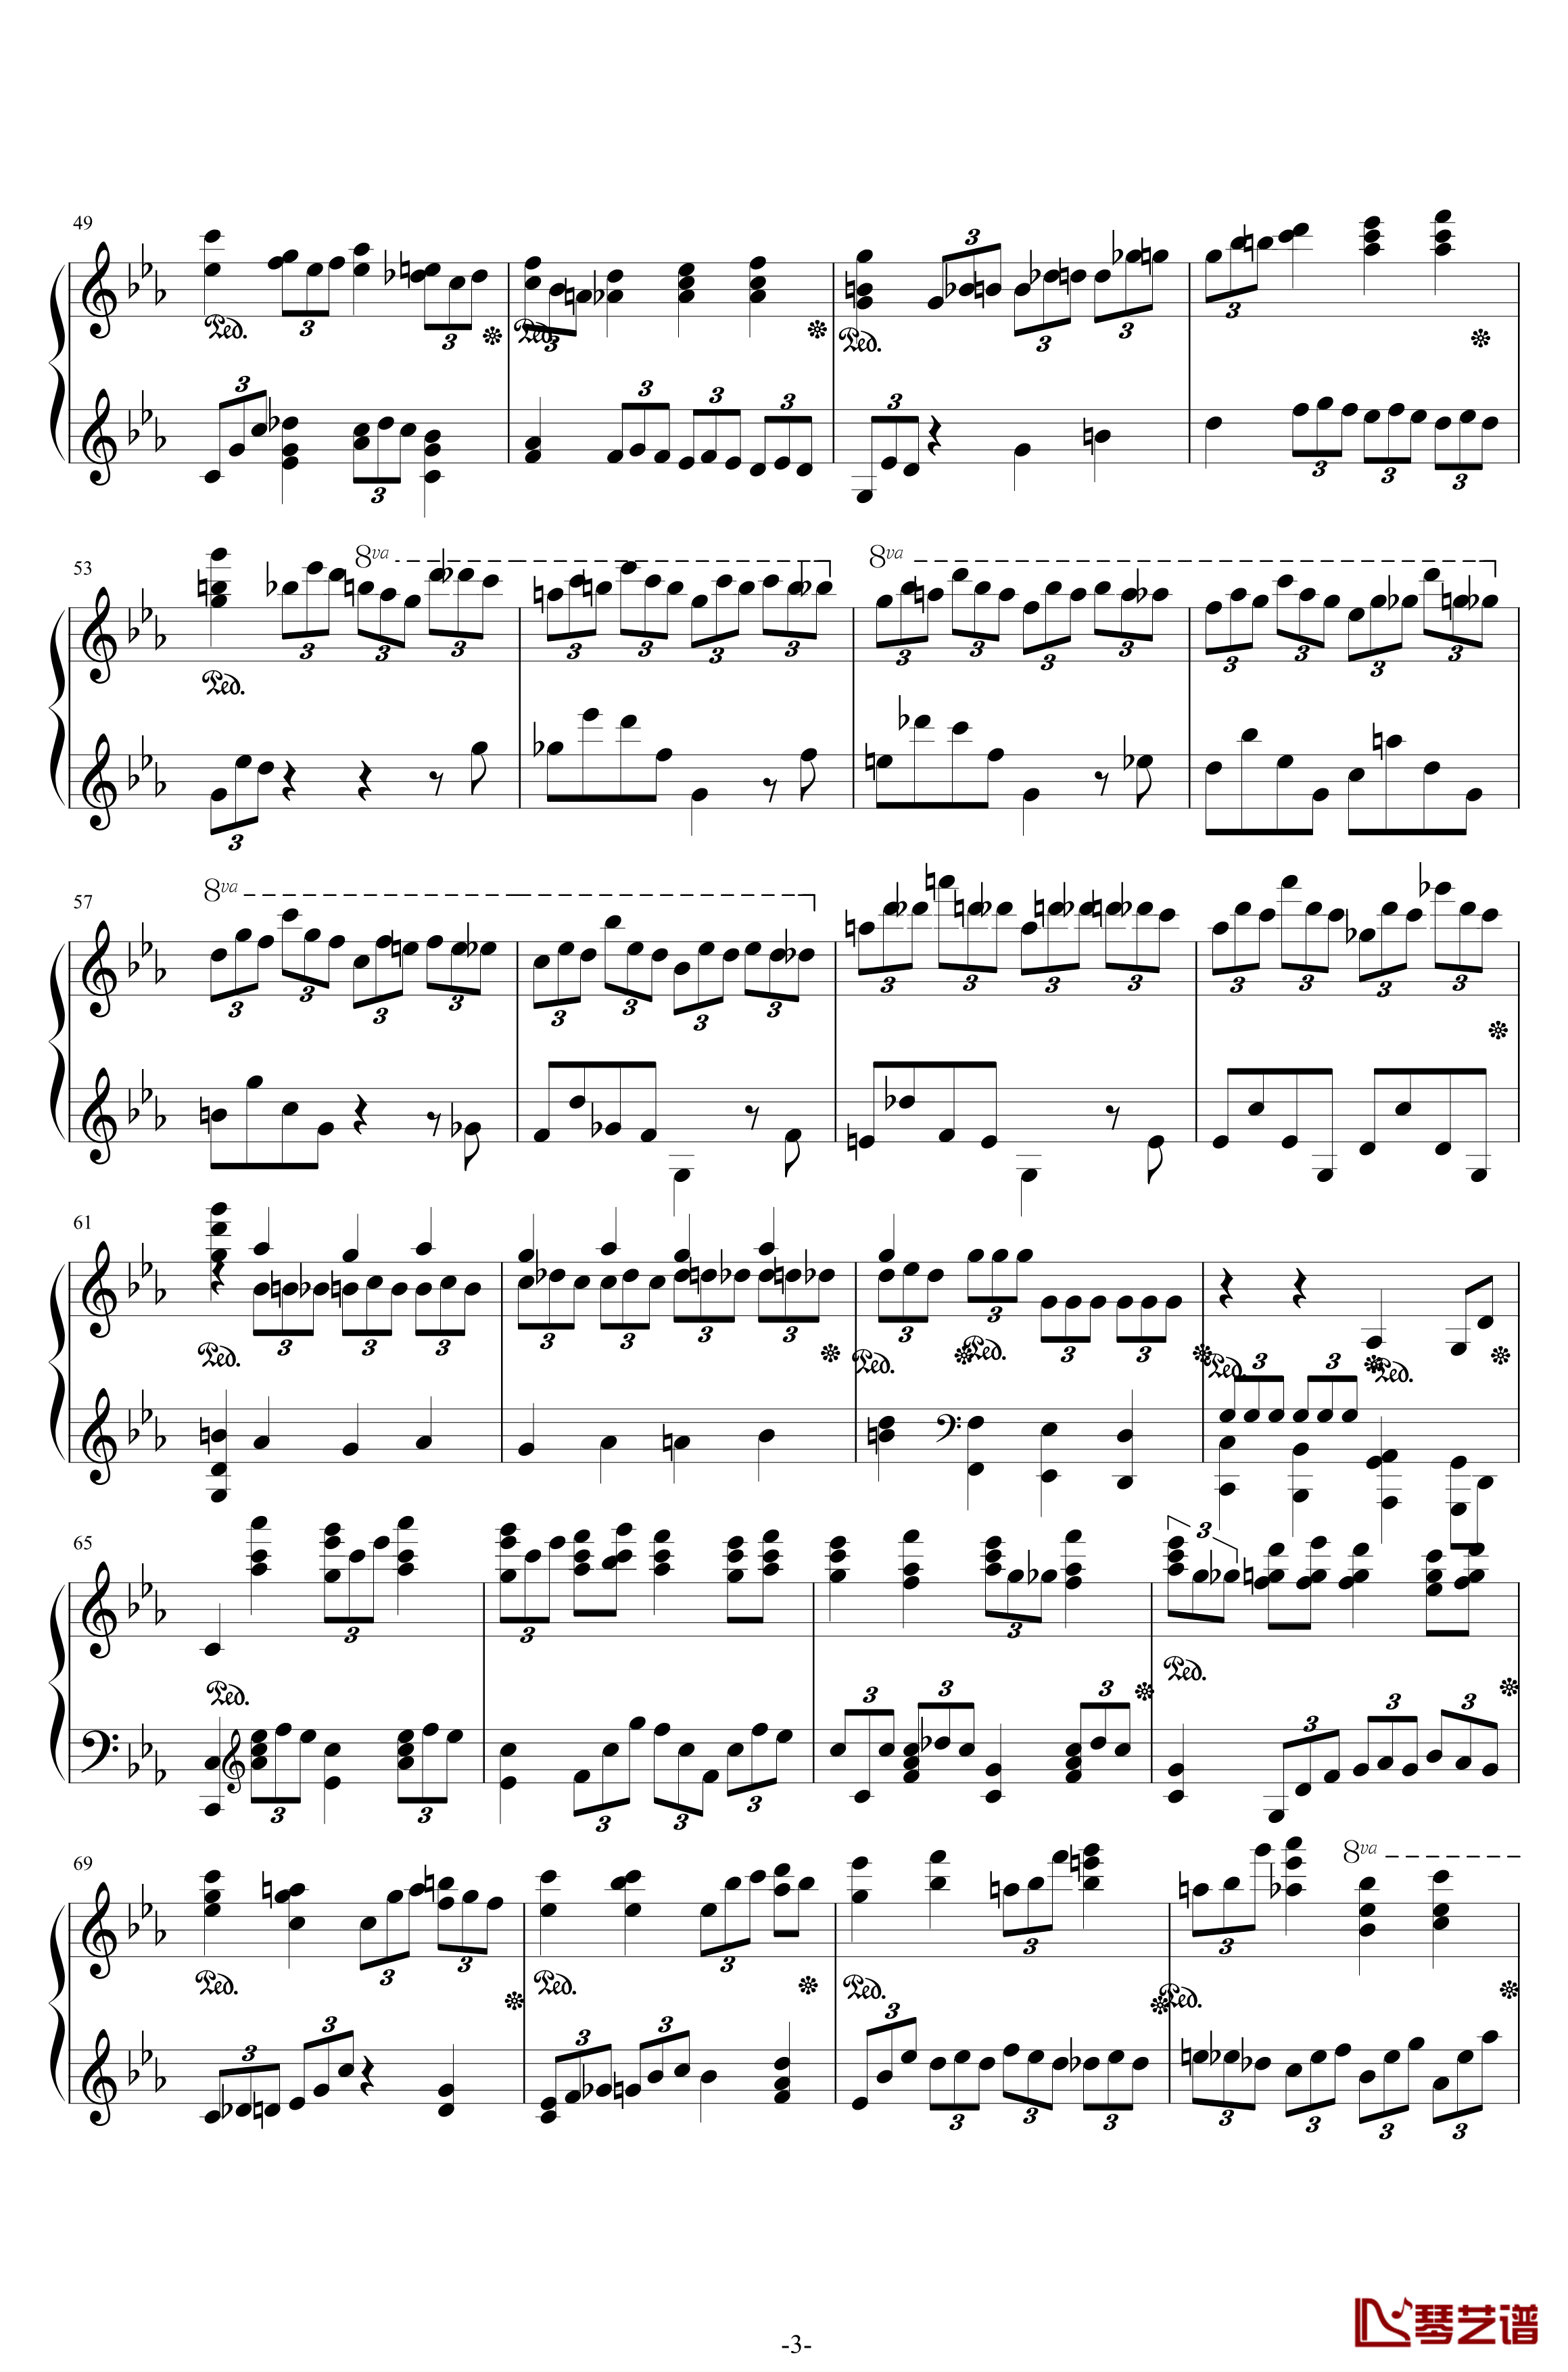 第二钢琴协奏曲钢琴谱-第三乐章独奏版-c小调-拉赫马尼若夫3